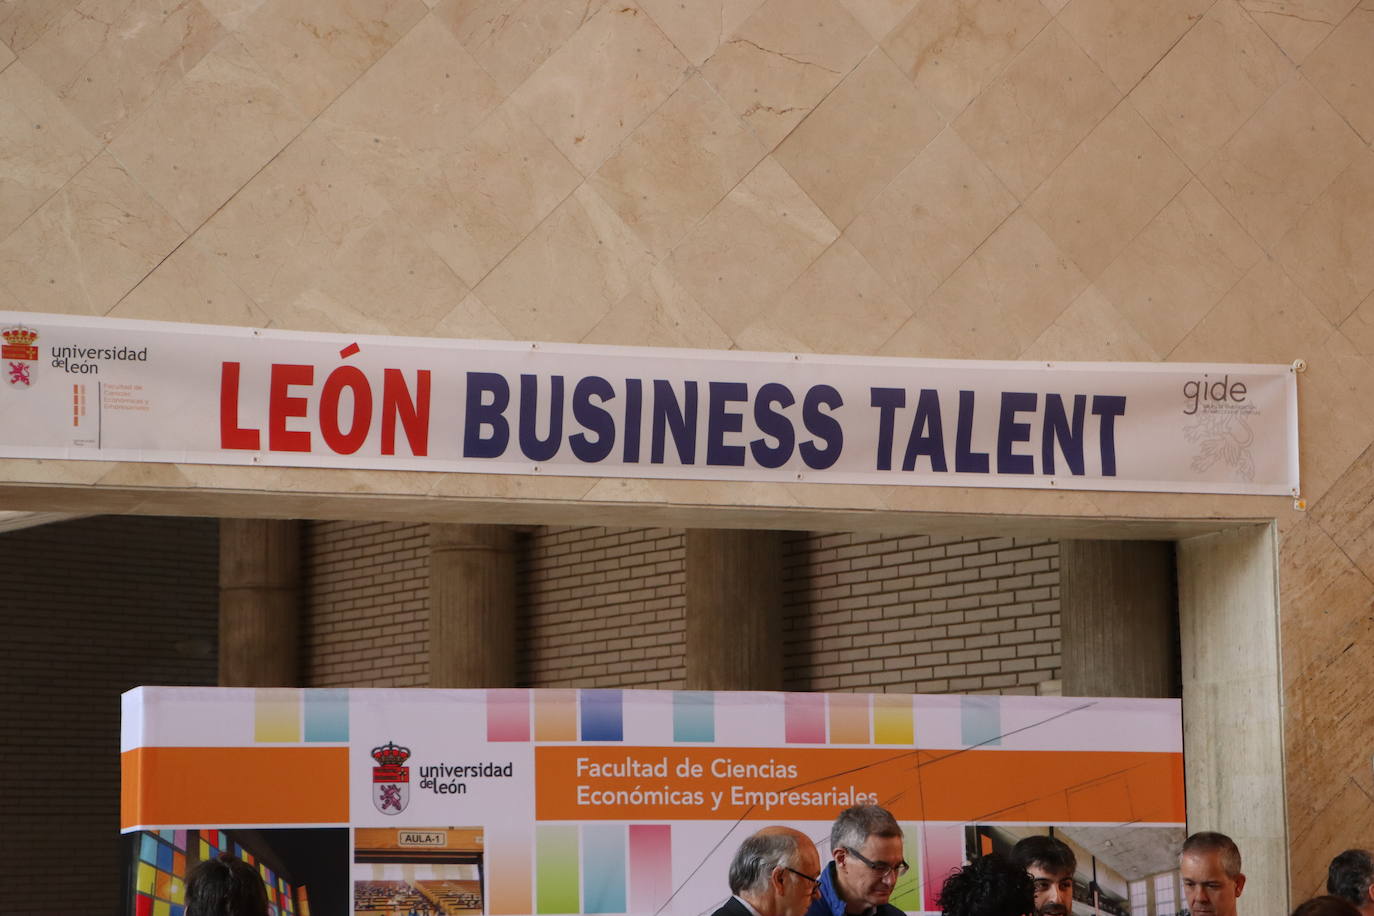 IX Business Talent